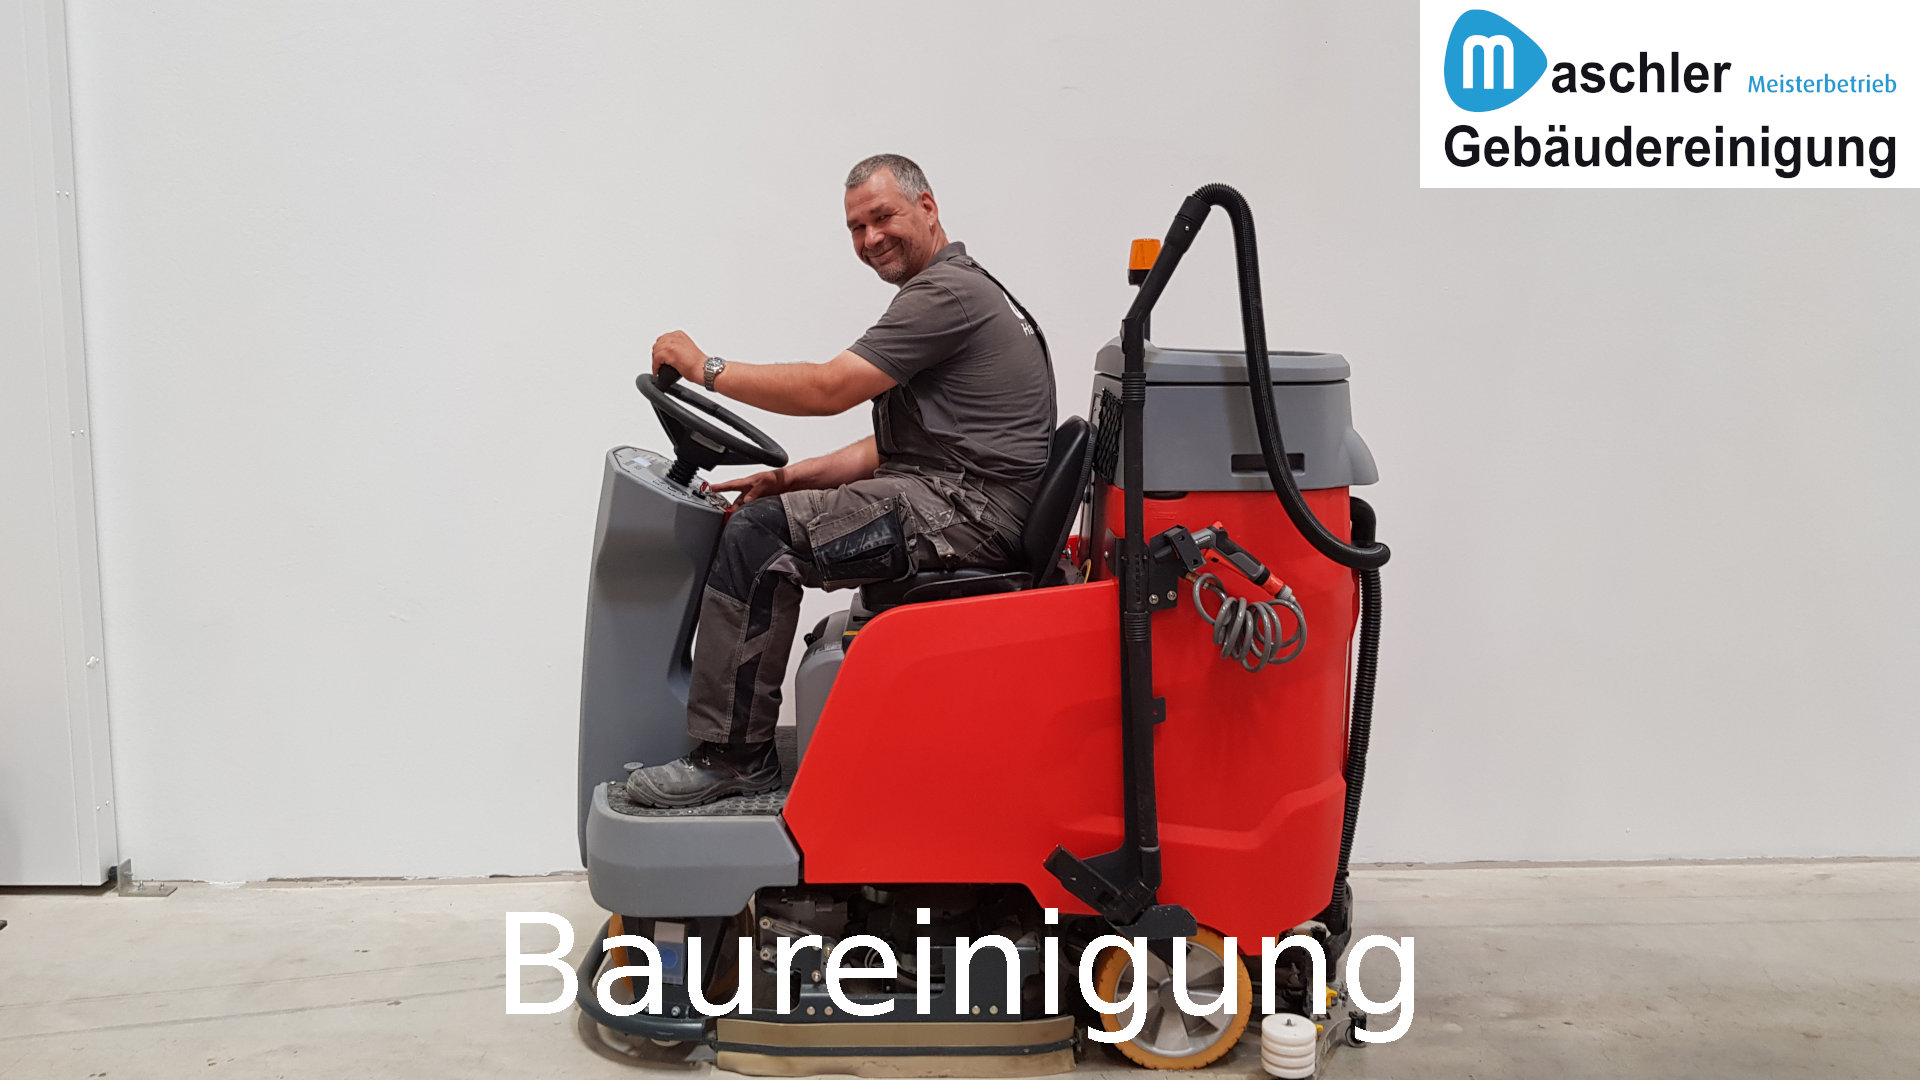 Baustellenreinigung Feinreinigung - Gebäudereinigung Maschler GmbH Schwerin